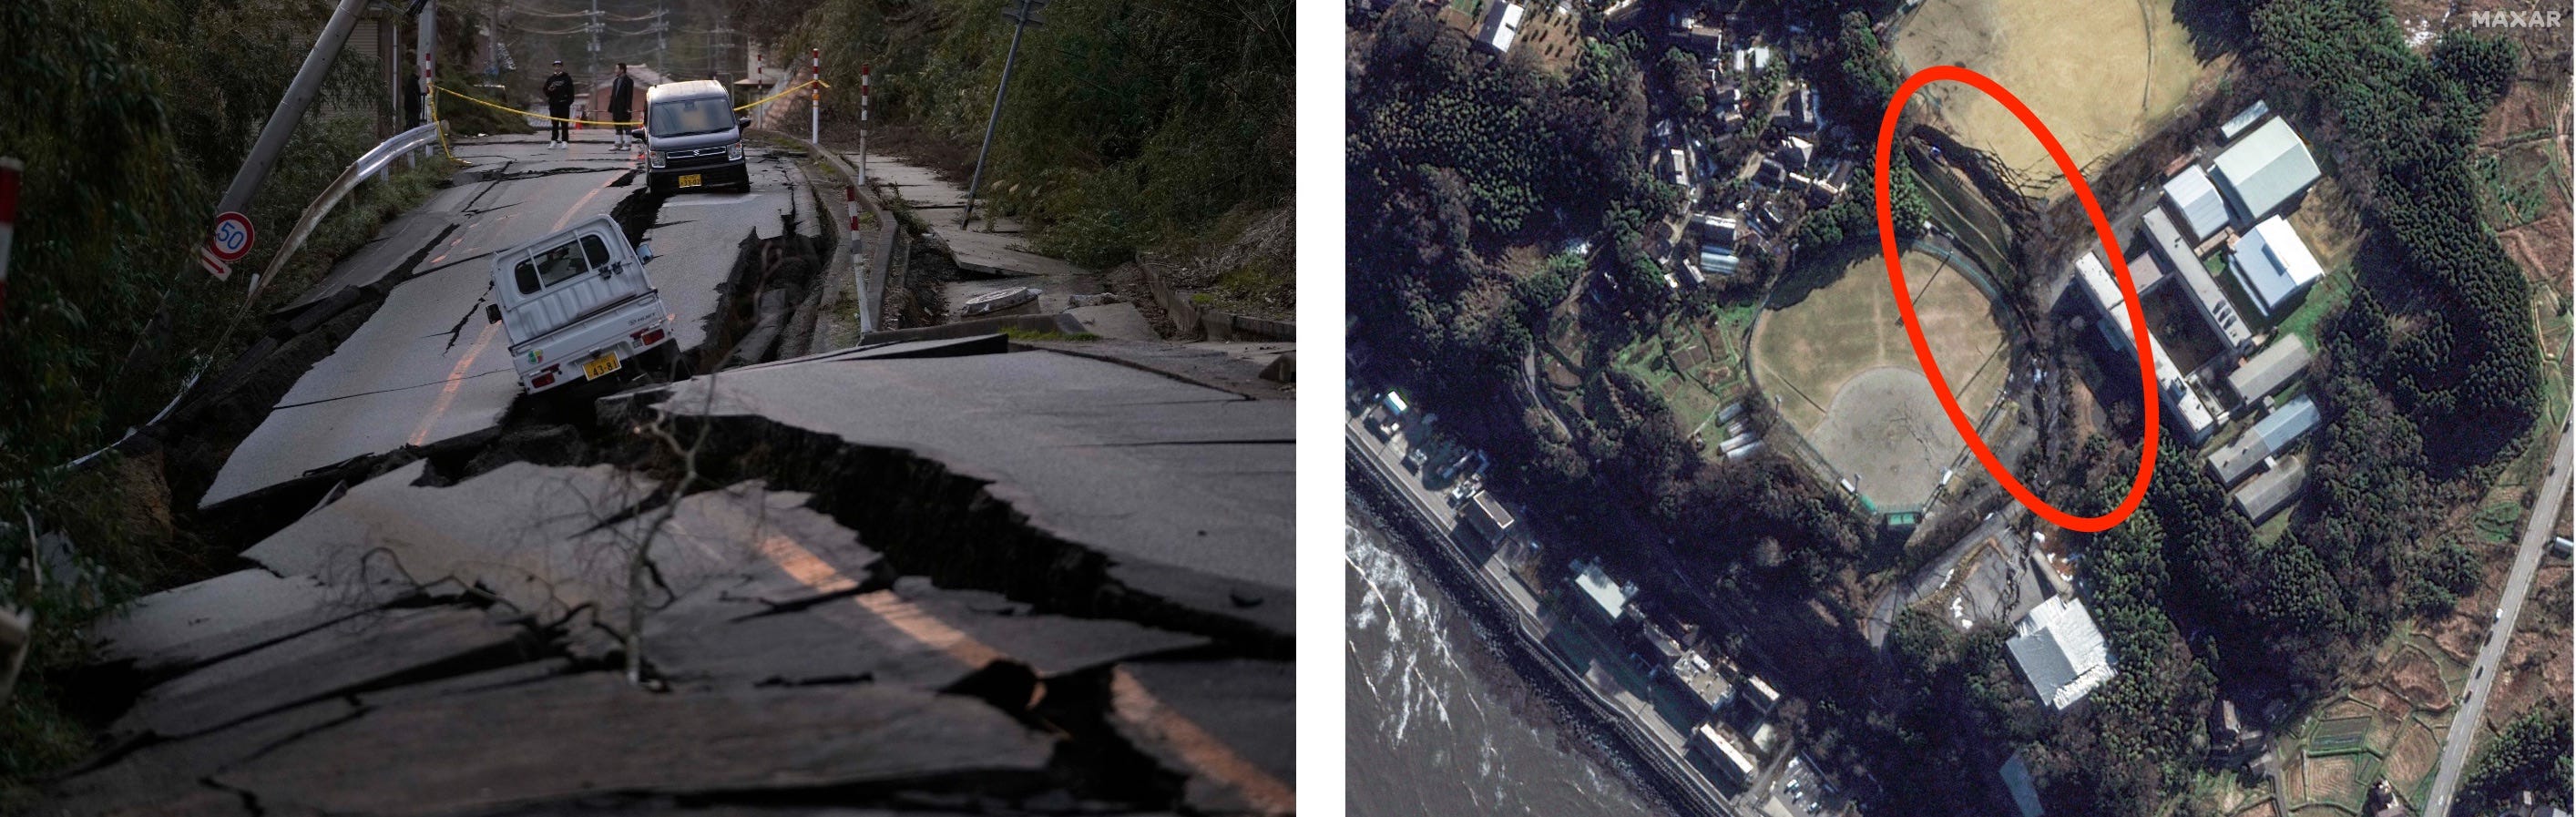 Das linke Bild zeigt eine durch ein Erdbeben zerstörte Straße in Japan.  Das rechte Bild ist ein Satellitenfoto eines riesigen Risses im Boden in Japan, der vom selben Erdbeben stammt.